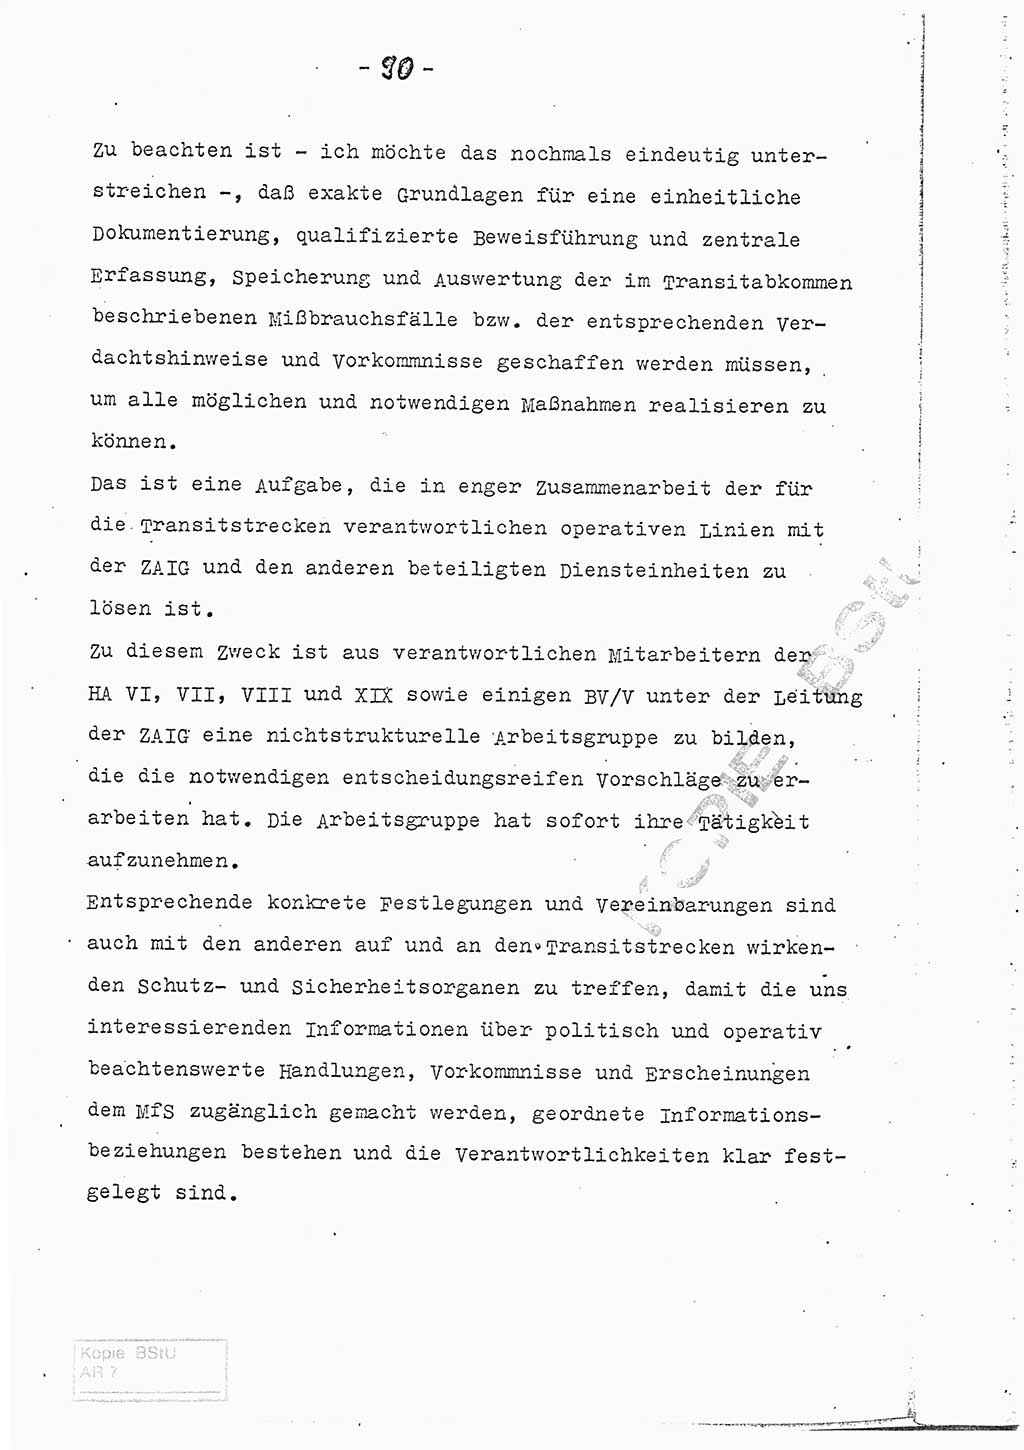 Referat (Entwurf) des Genossen Minister (Generaloberst Erich Mielke) auf der Dienstkonferenz 1972, Ministerium für Staatssicherheit (MfS) [Deutsche Demokratische Republik (DDR)], Der Minister, Geheime Verschlußsache (GVS) 008-150/72, Berlin 25.2.1972, Seite 90 (Ref. Entw. DK MfS DDR Min. GVS 008-150/72 1972, S. 90)